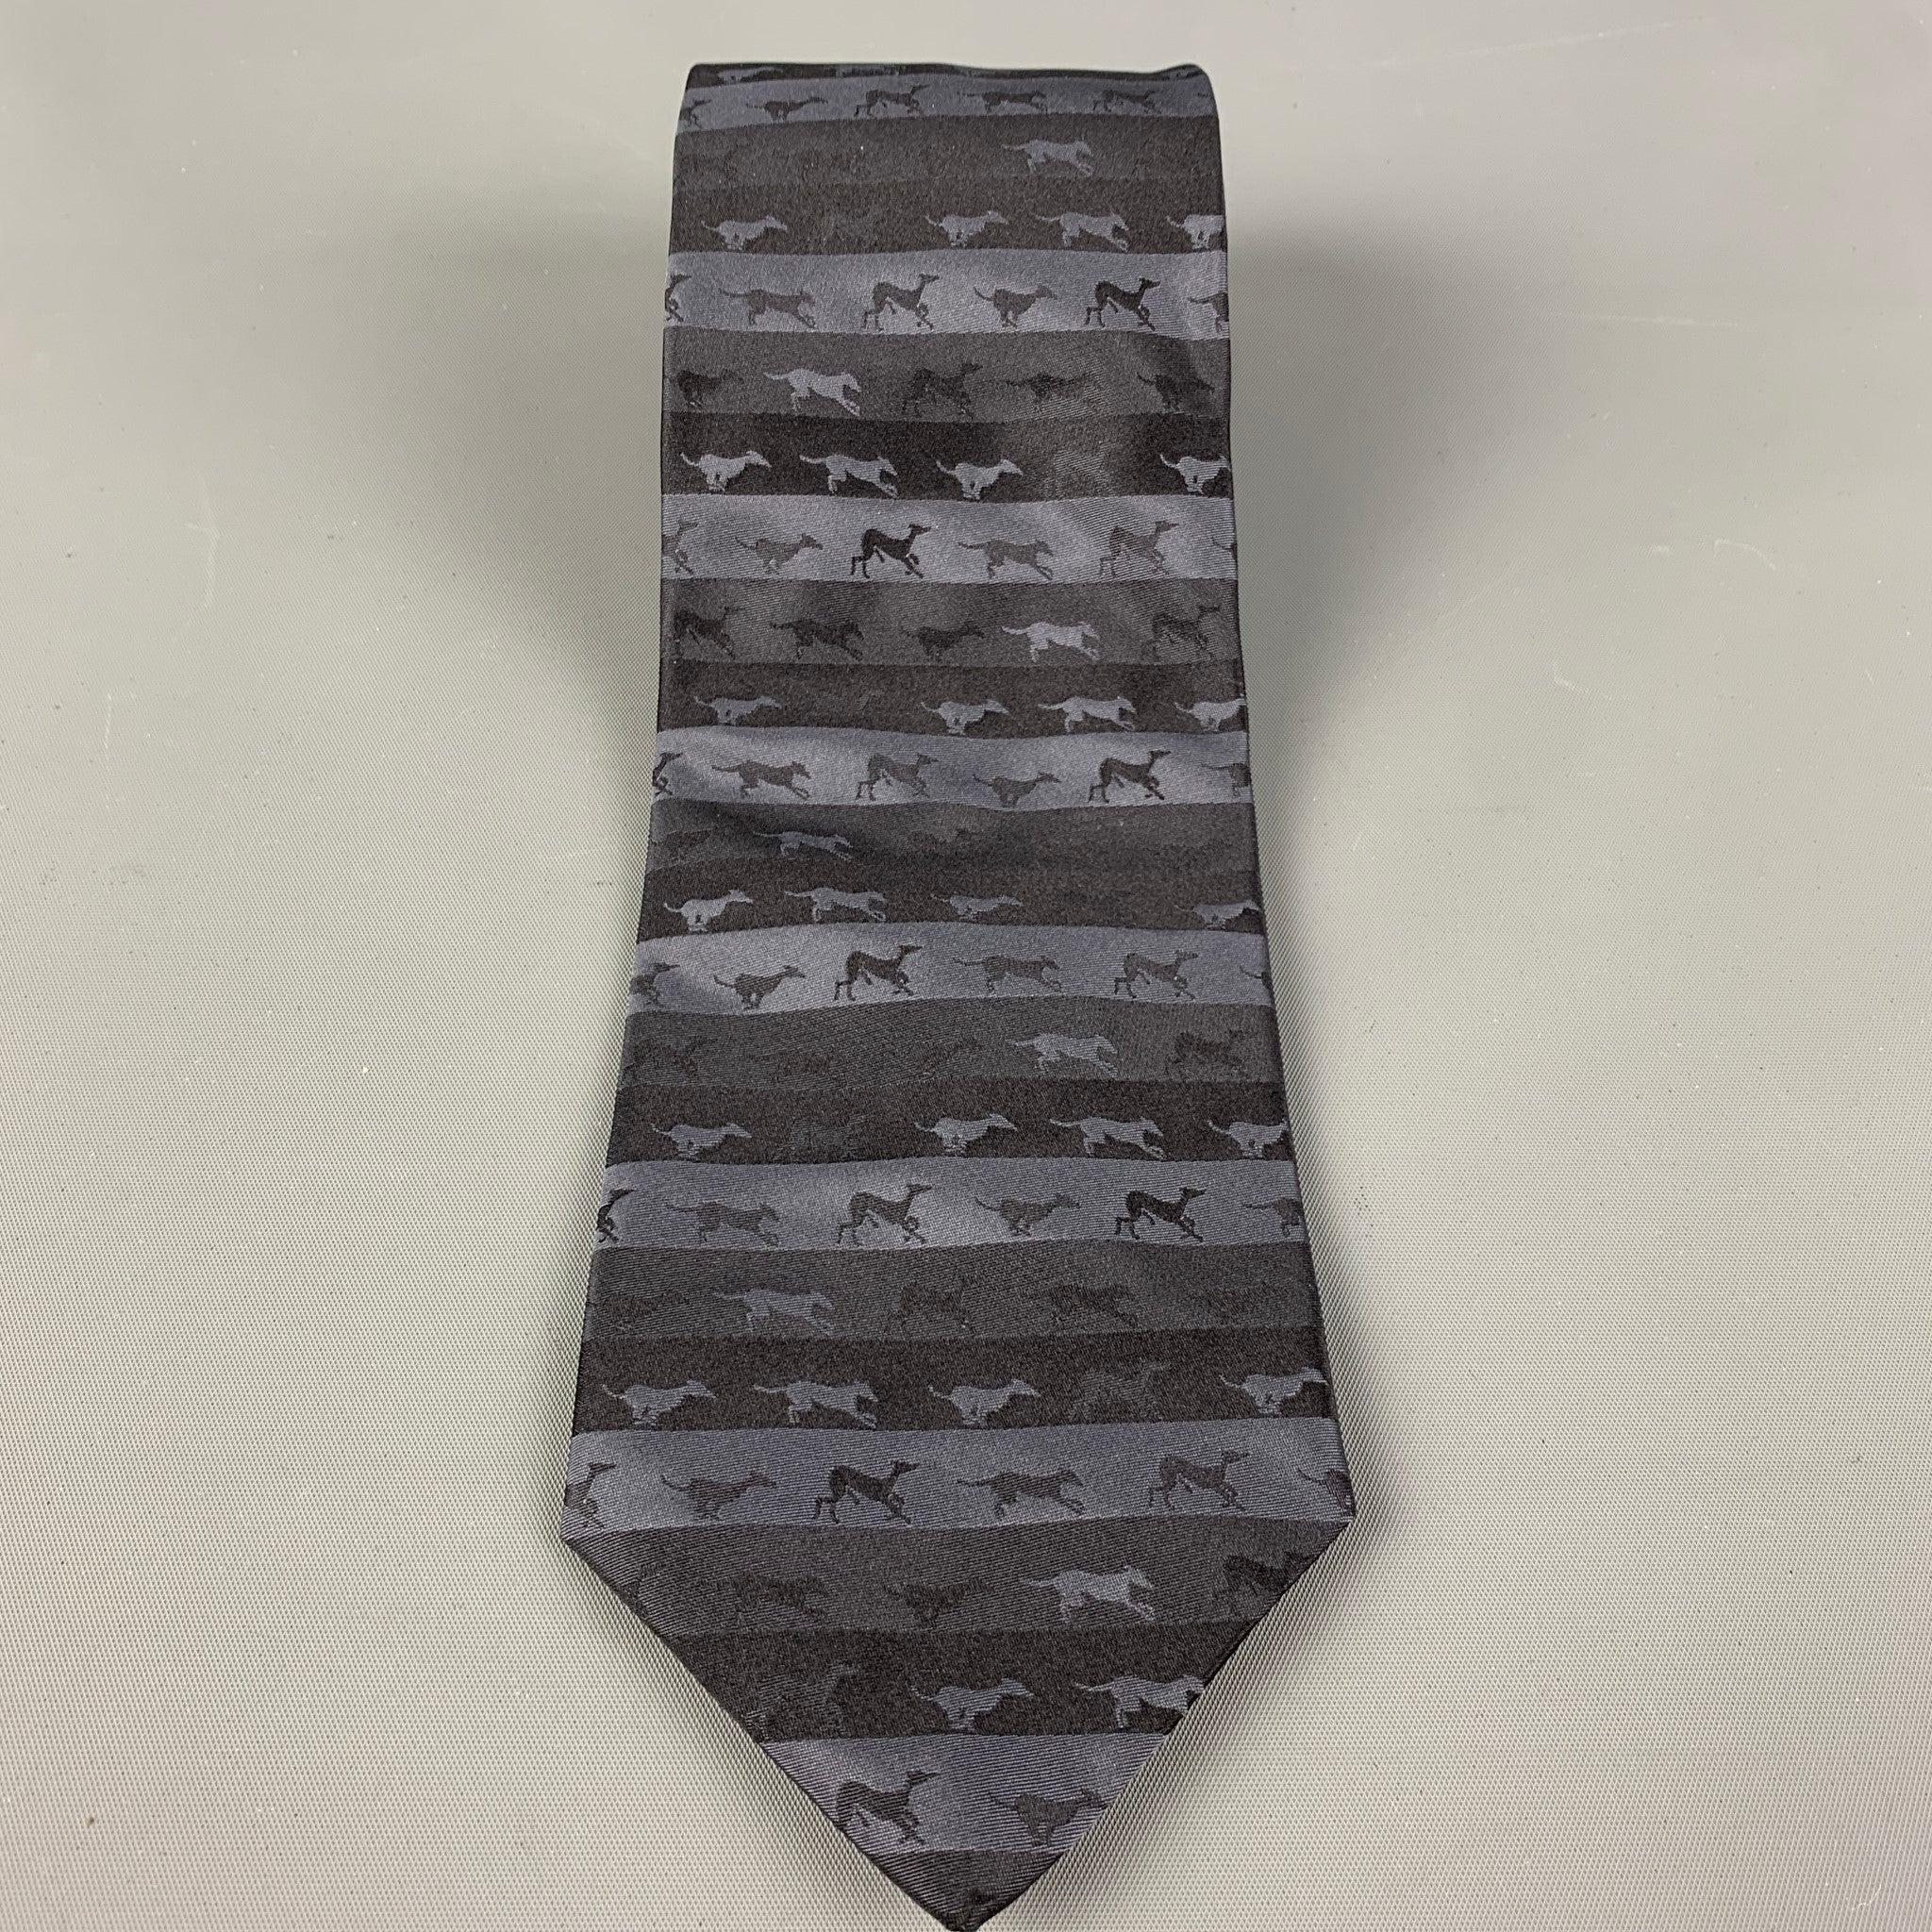 La cravate noire et gris foncé de Trussardi présente un motif rayé avec des chiens en liberté.100% soie. Fabriqué en Italie.
Très bon état d'origine.
 

Mesures : 
  
Largeur : 3 pouces 
Longueur : 56 pouces





  
  
 
Référence Sui Generis :